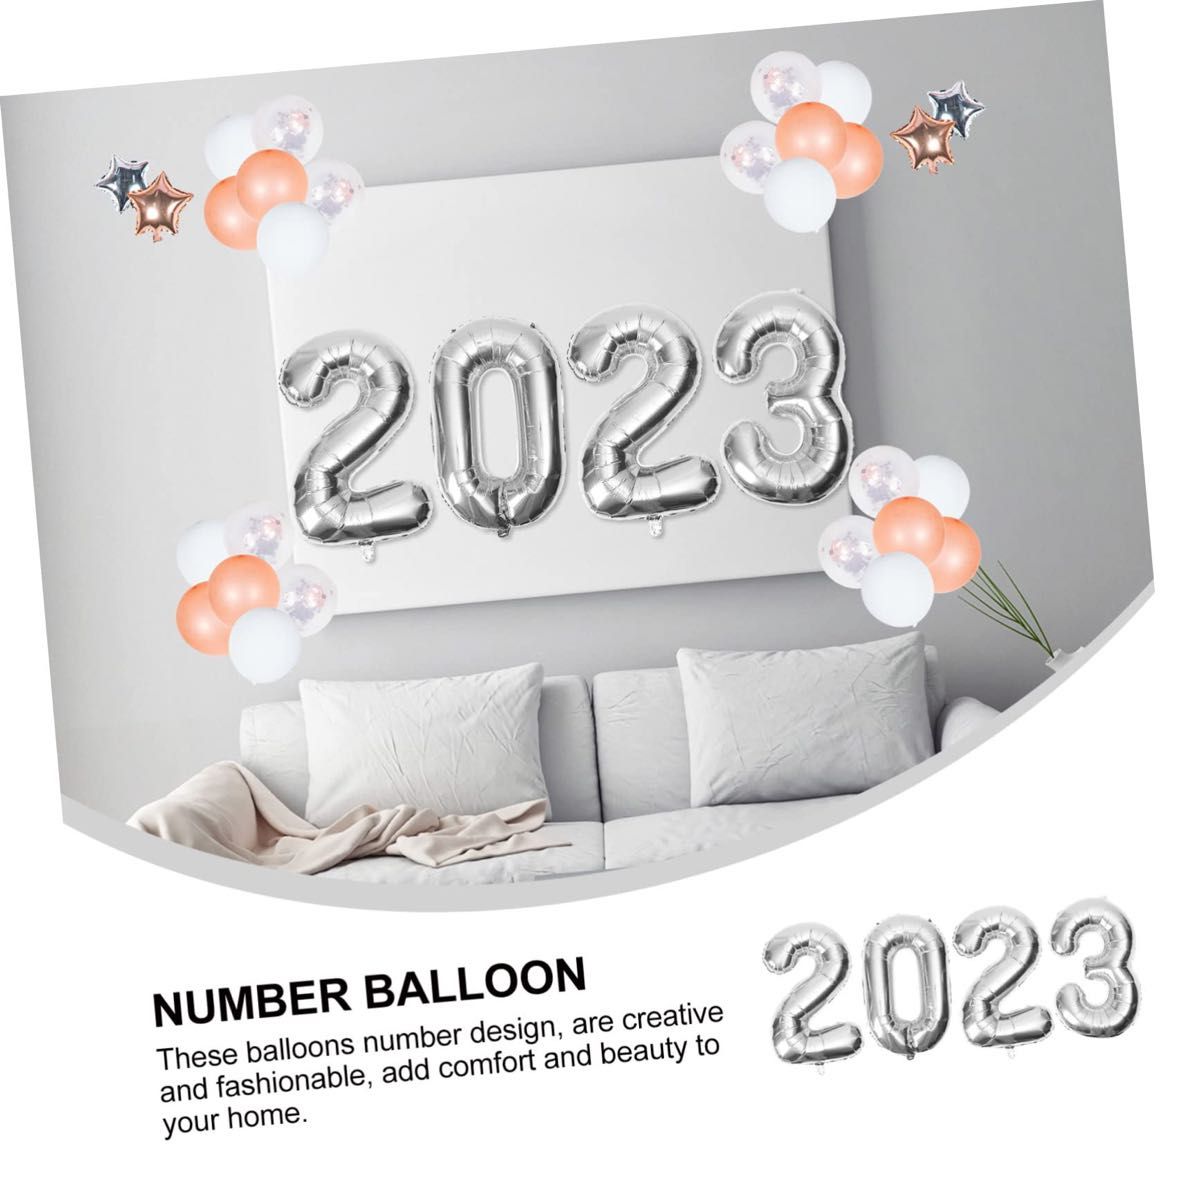 数字バルーン 数字風船 バルーン 風船 2023風船 2023バルーン 装飾 サプライズ 記念日 誕生日 シルバー 20 23